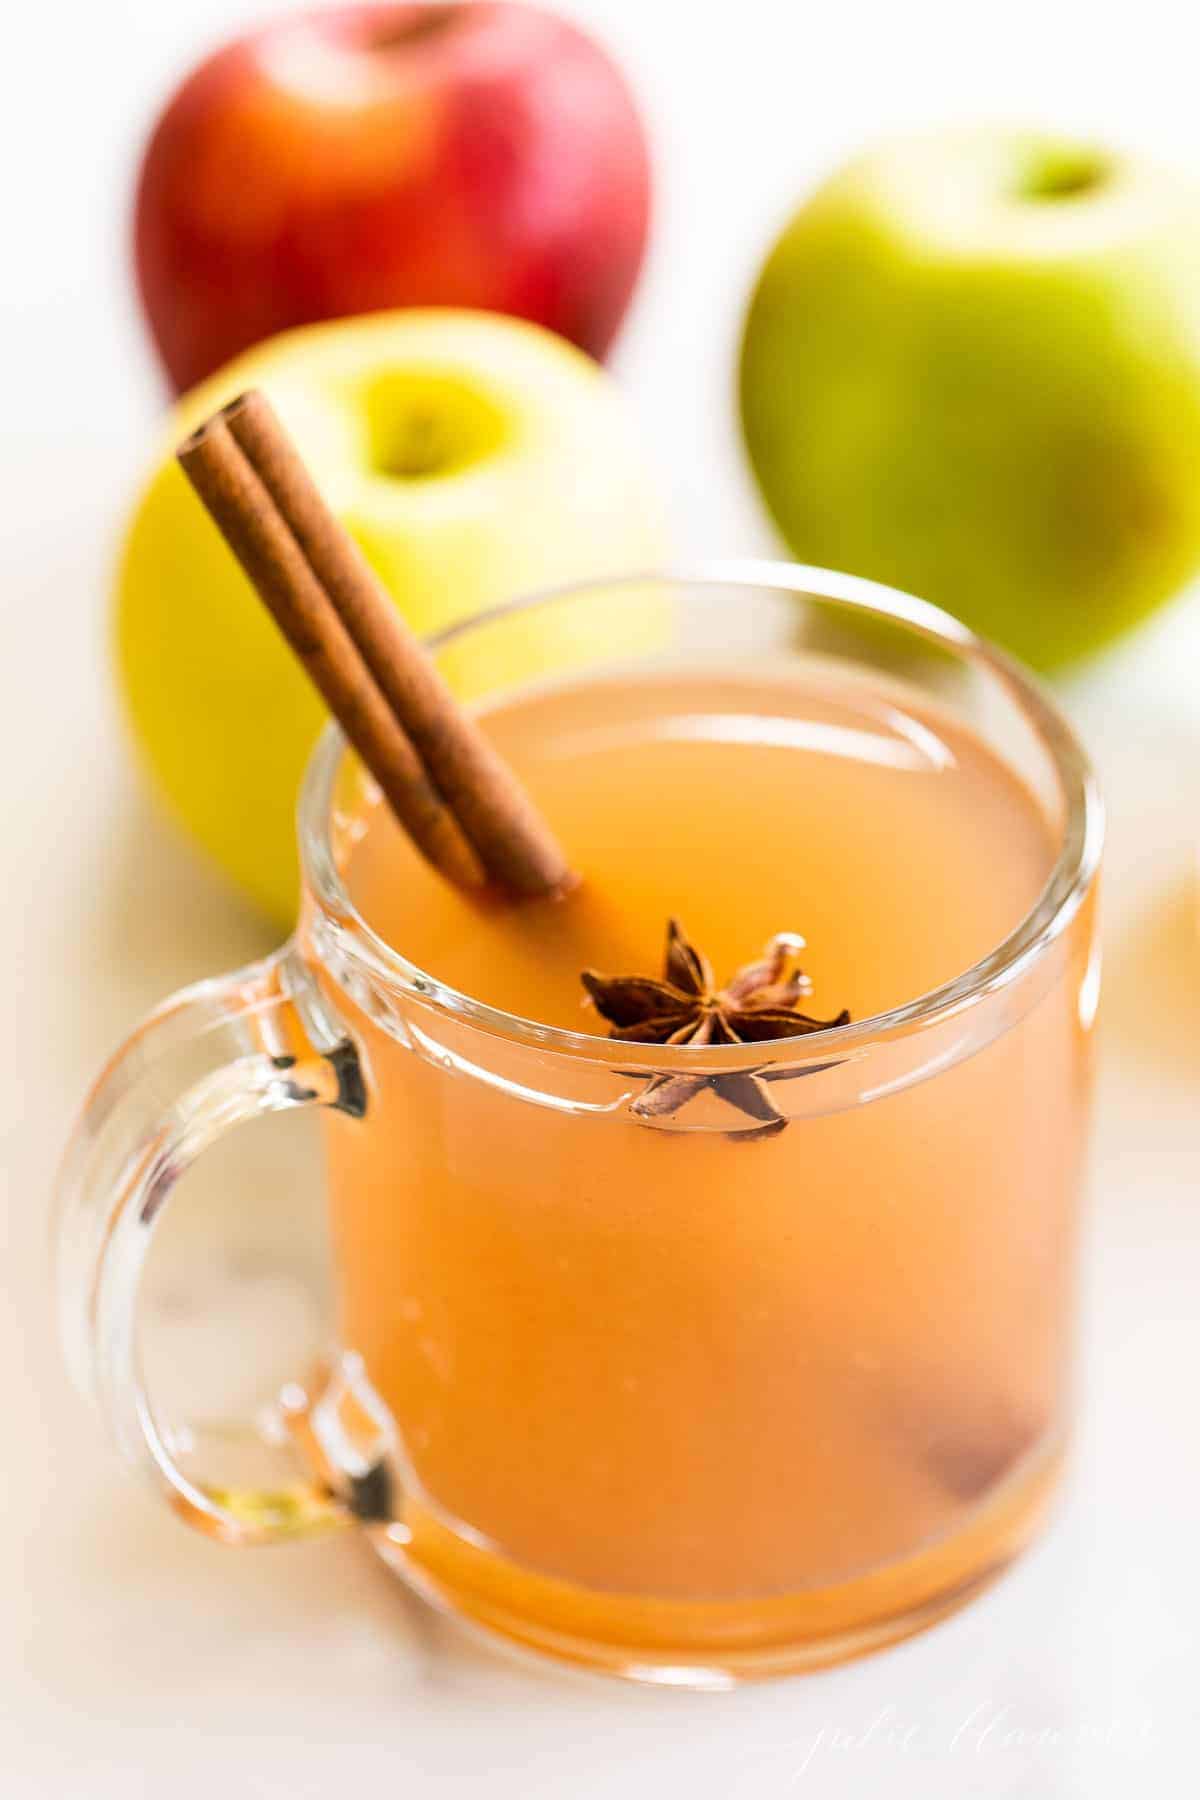 大理石的表面，清澈的杯子里装满了自制的苹果酒，整个苹果放在一边。gydF4y2Ba